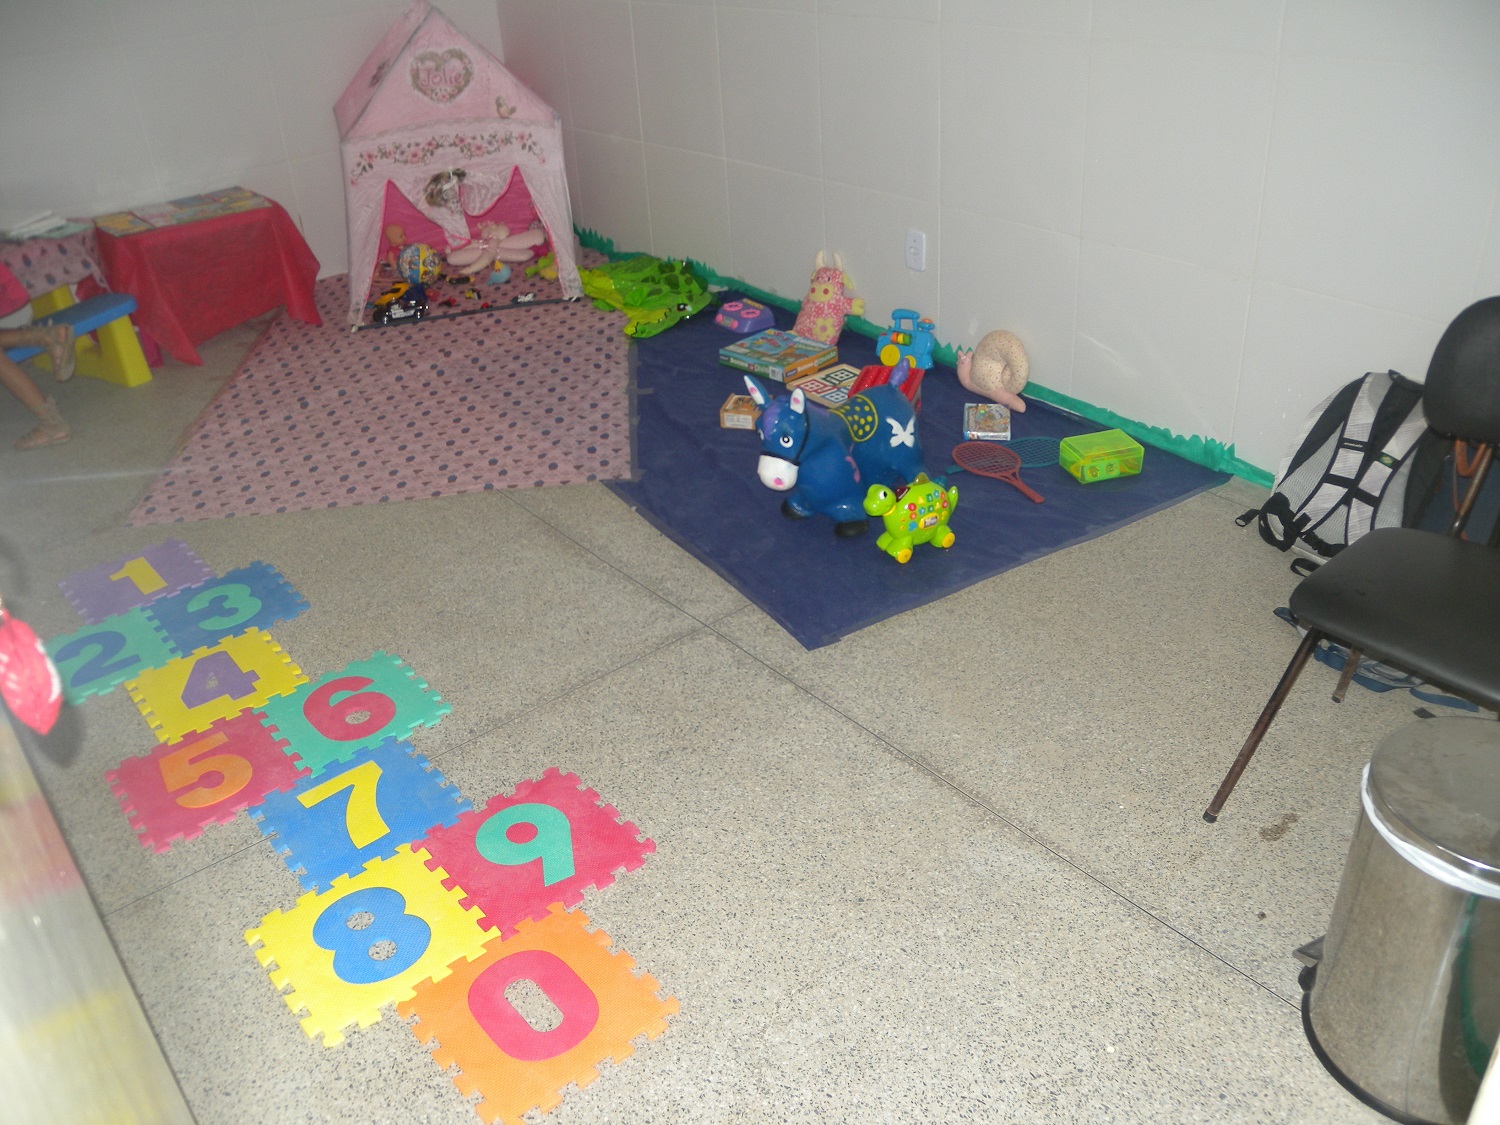 Brinquedos vão ajudar os pais e/ou responsáveis a fazerem as consultas com mais tranquilidade